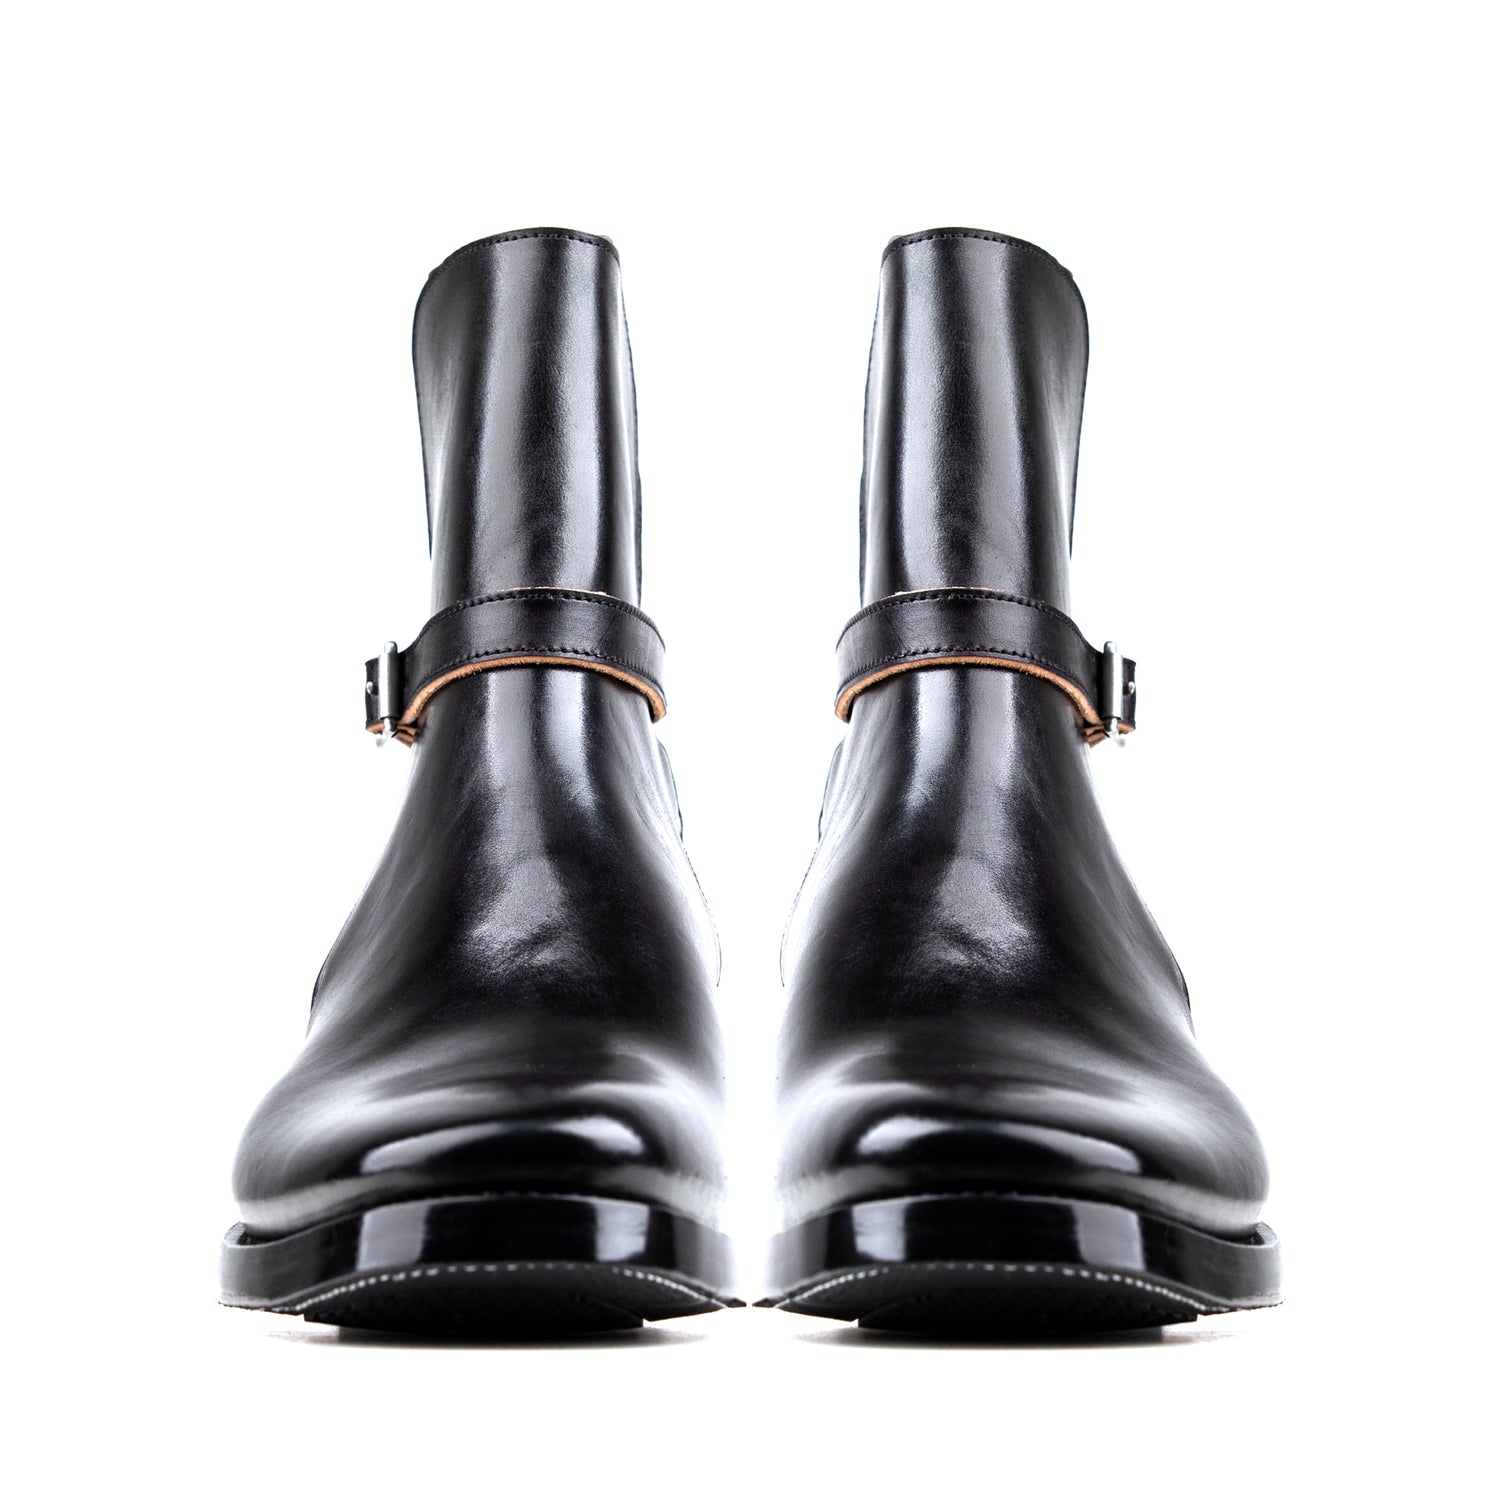 Jodhpur Boots - Black Horsebutt TPR - xbxs®boots factory